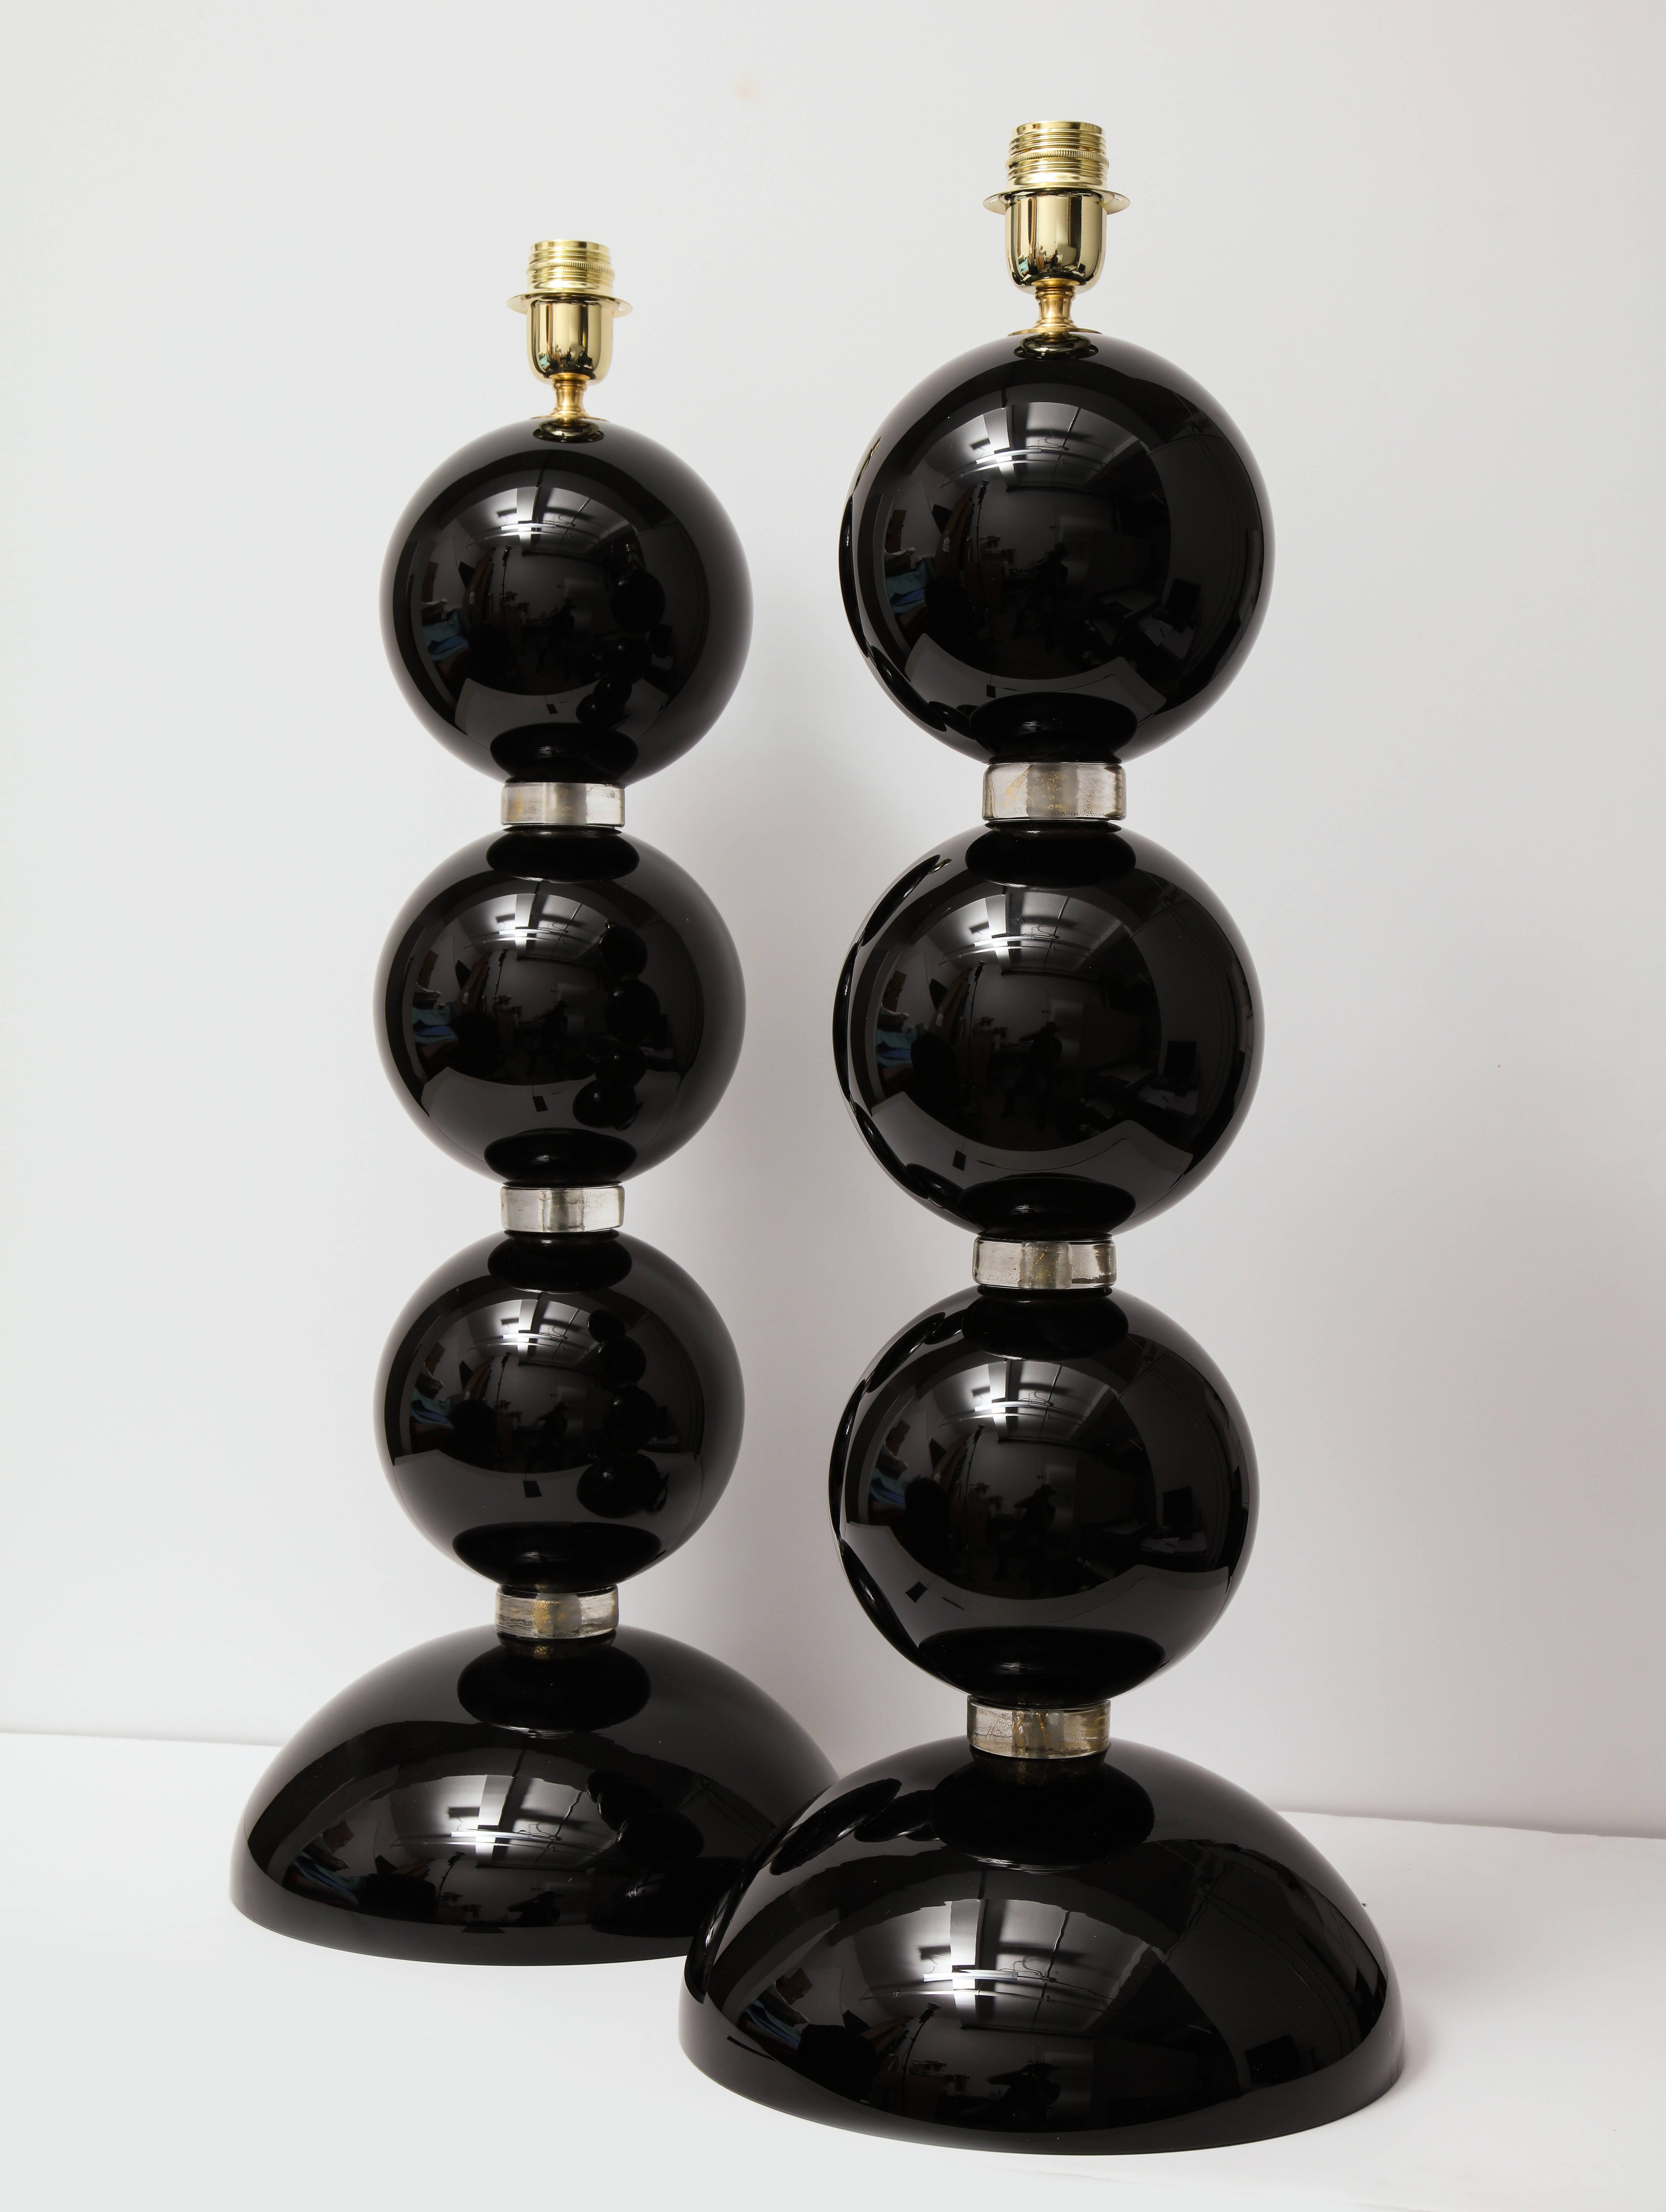 Ein Paar beeindruckend großer italienischer mundgeblasener Murano-Glaskugellampen in Schwarz und Gold. Schwarze Murano-Glaskugeln werden durch klare Glasringe getrennt, in die 23-karätige Goldflecken eingearbeitet sind, was ihnen einen schimmernden